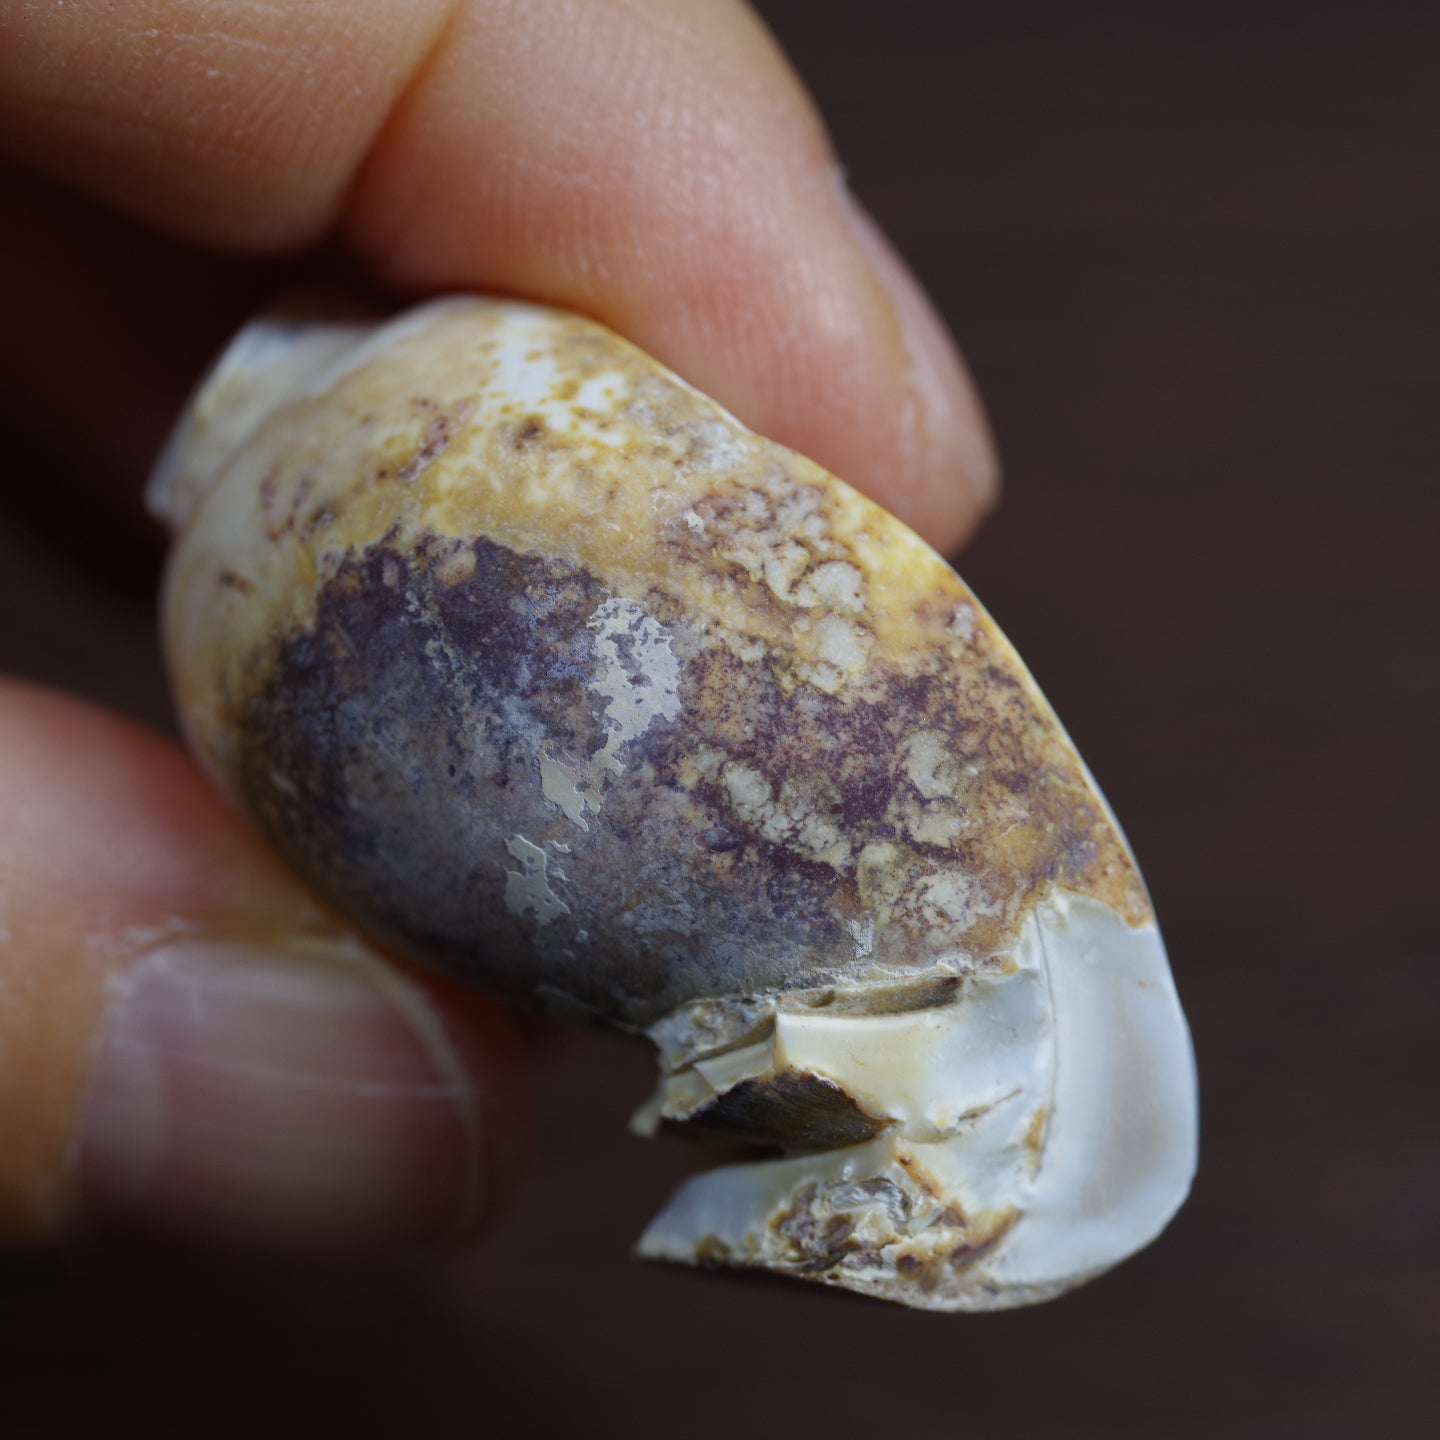 水晶化した巻き貝の化石5 インド産 Crystallized Conch India 写真現物 動画あり